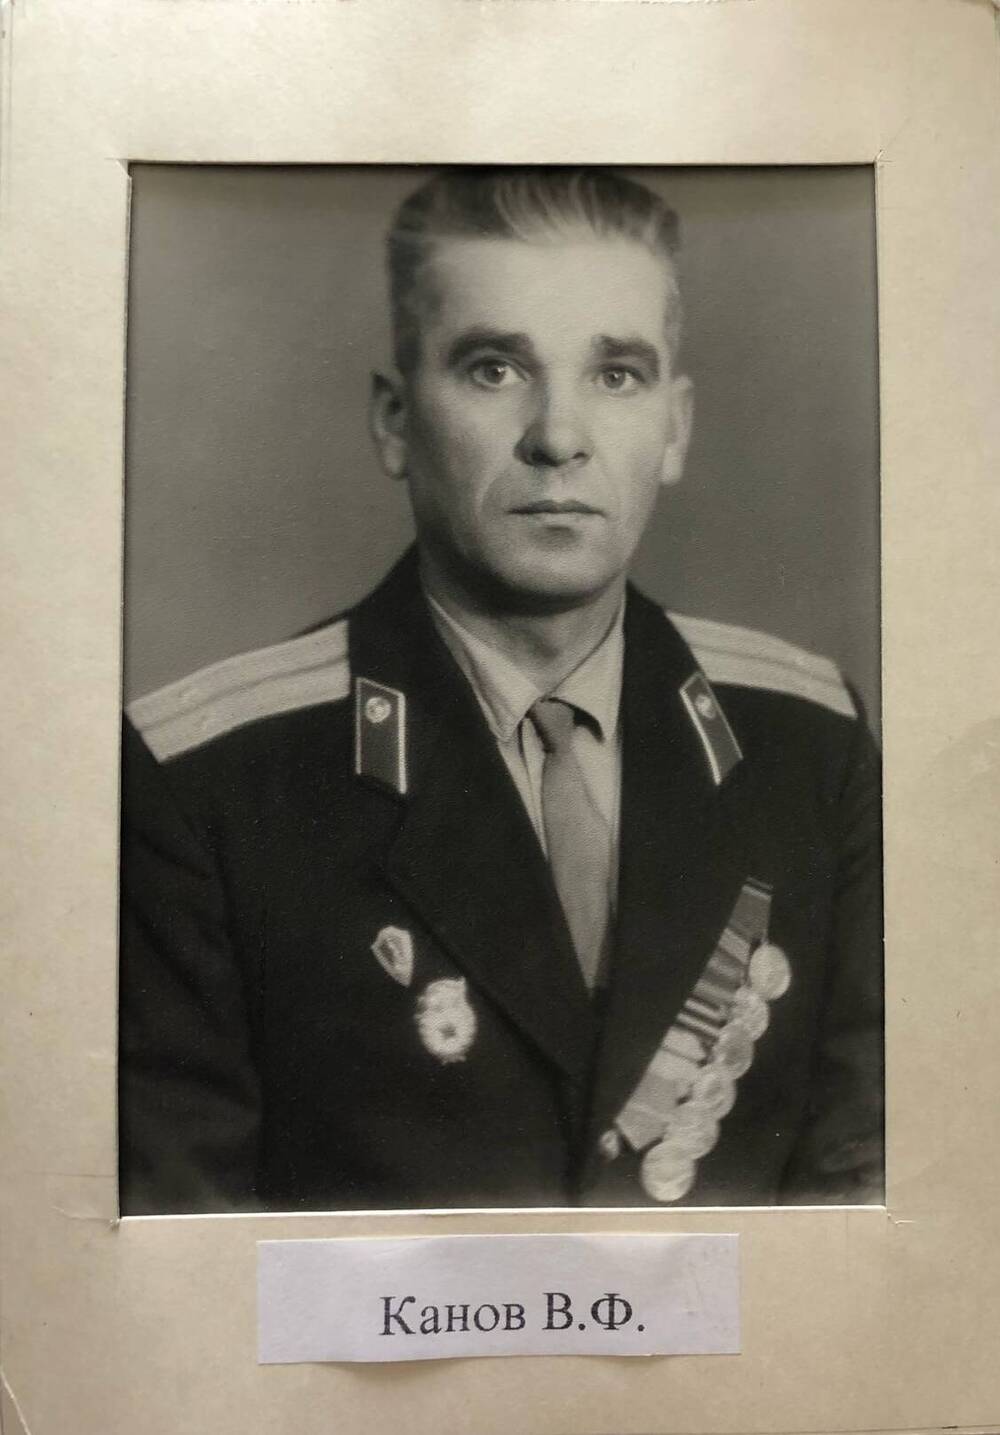 Фотография Канова В.Ф., камышанина, участника Великой Отечественной войны 1941-1945 гг., защитника Сталинграда